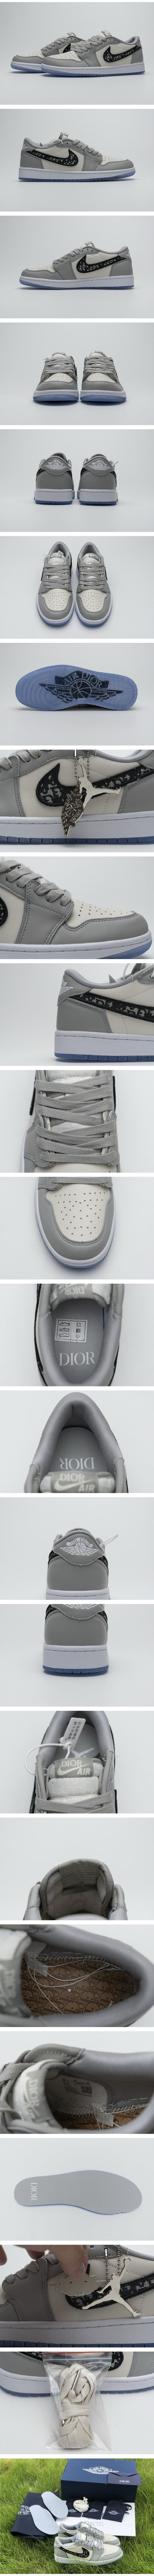 Dior x Nike Air Jordan 1 Low SP 